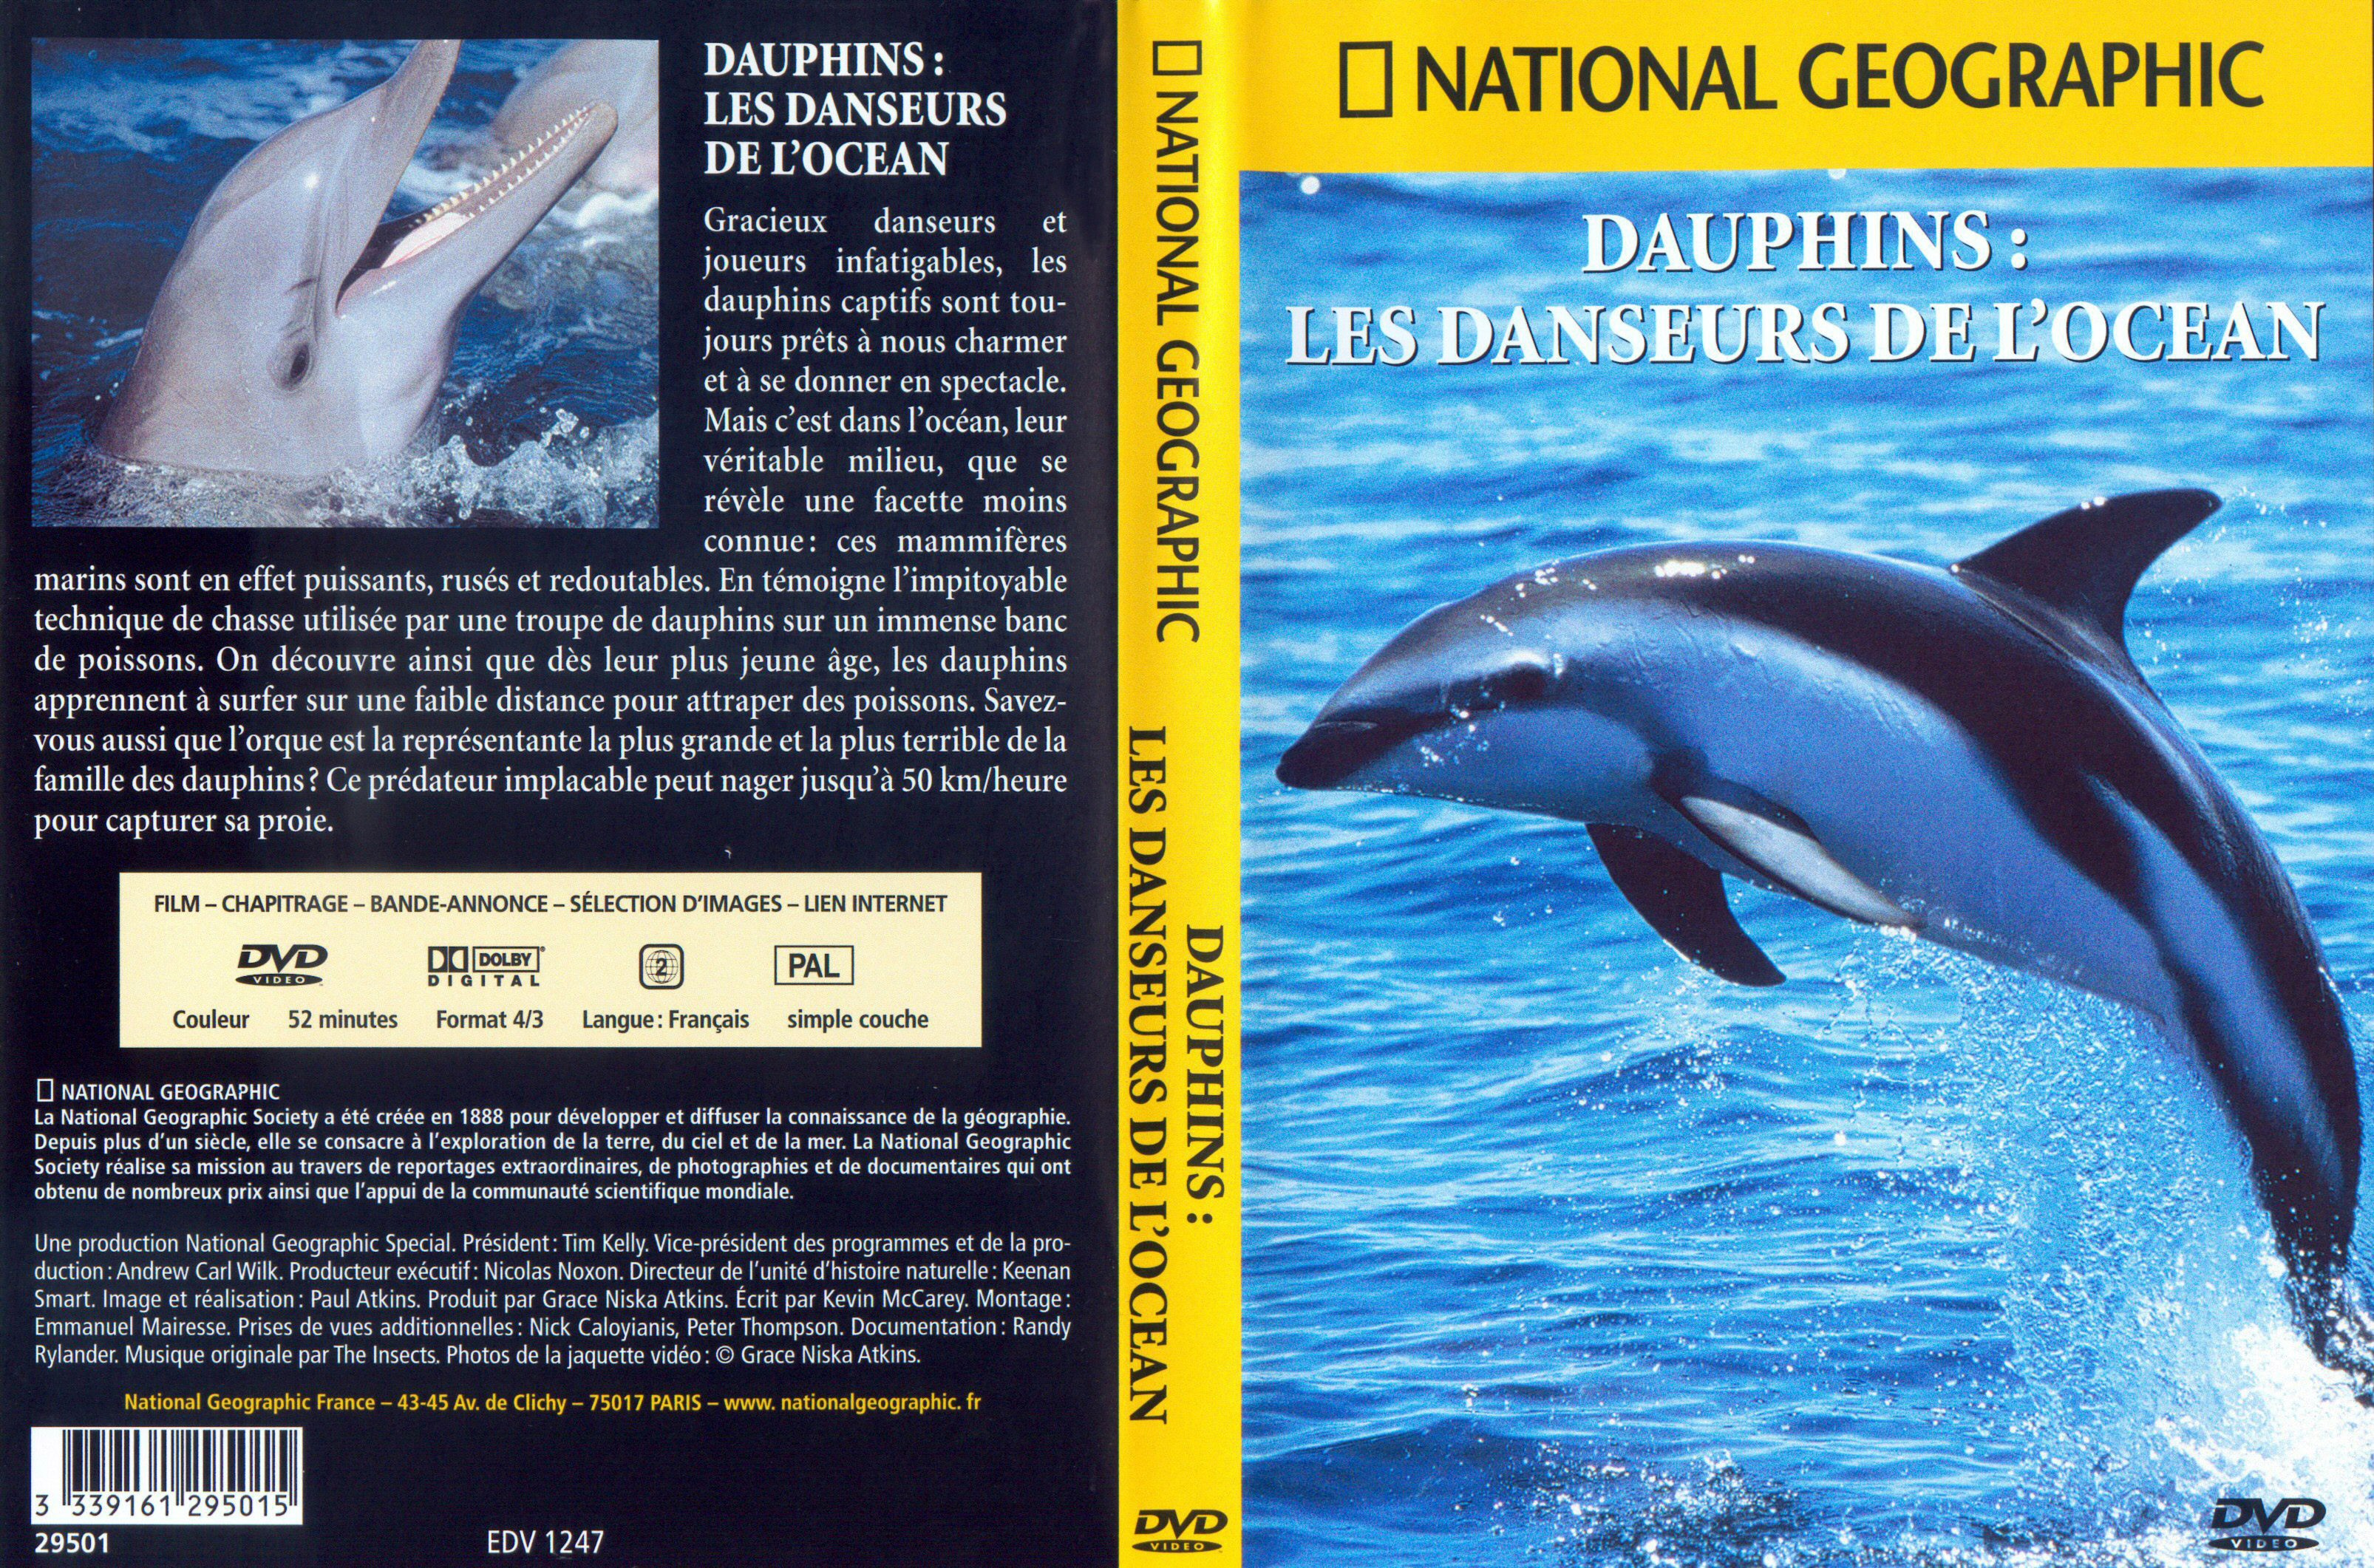 Jaquette DVD National Geographic - Dauphins les danseurs de l